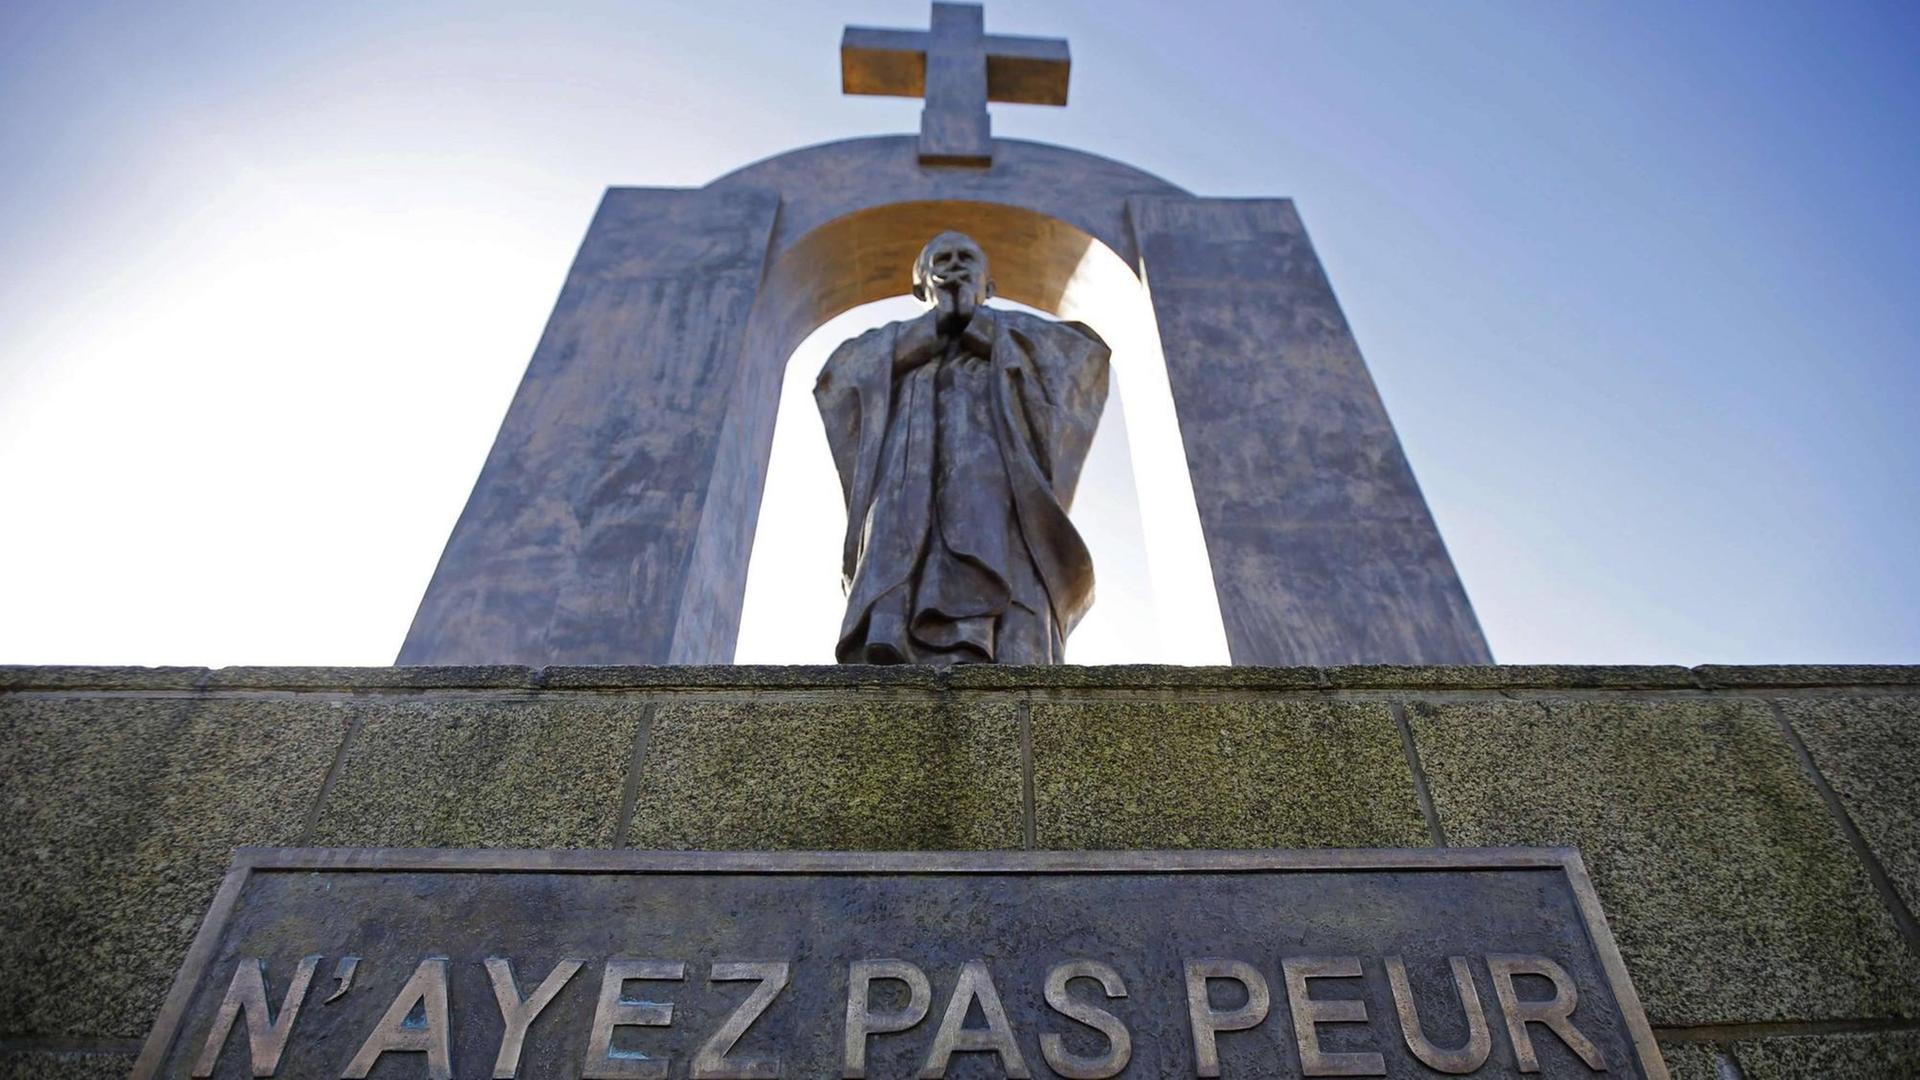 Die Statue von Johannes Paul II. im französischen Ploermel. Weil darüber ein großes Kreuz prangt, gab es schon zur Einweihung Protest.